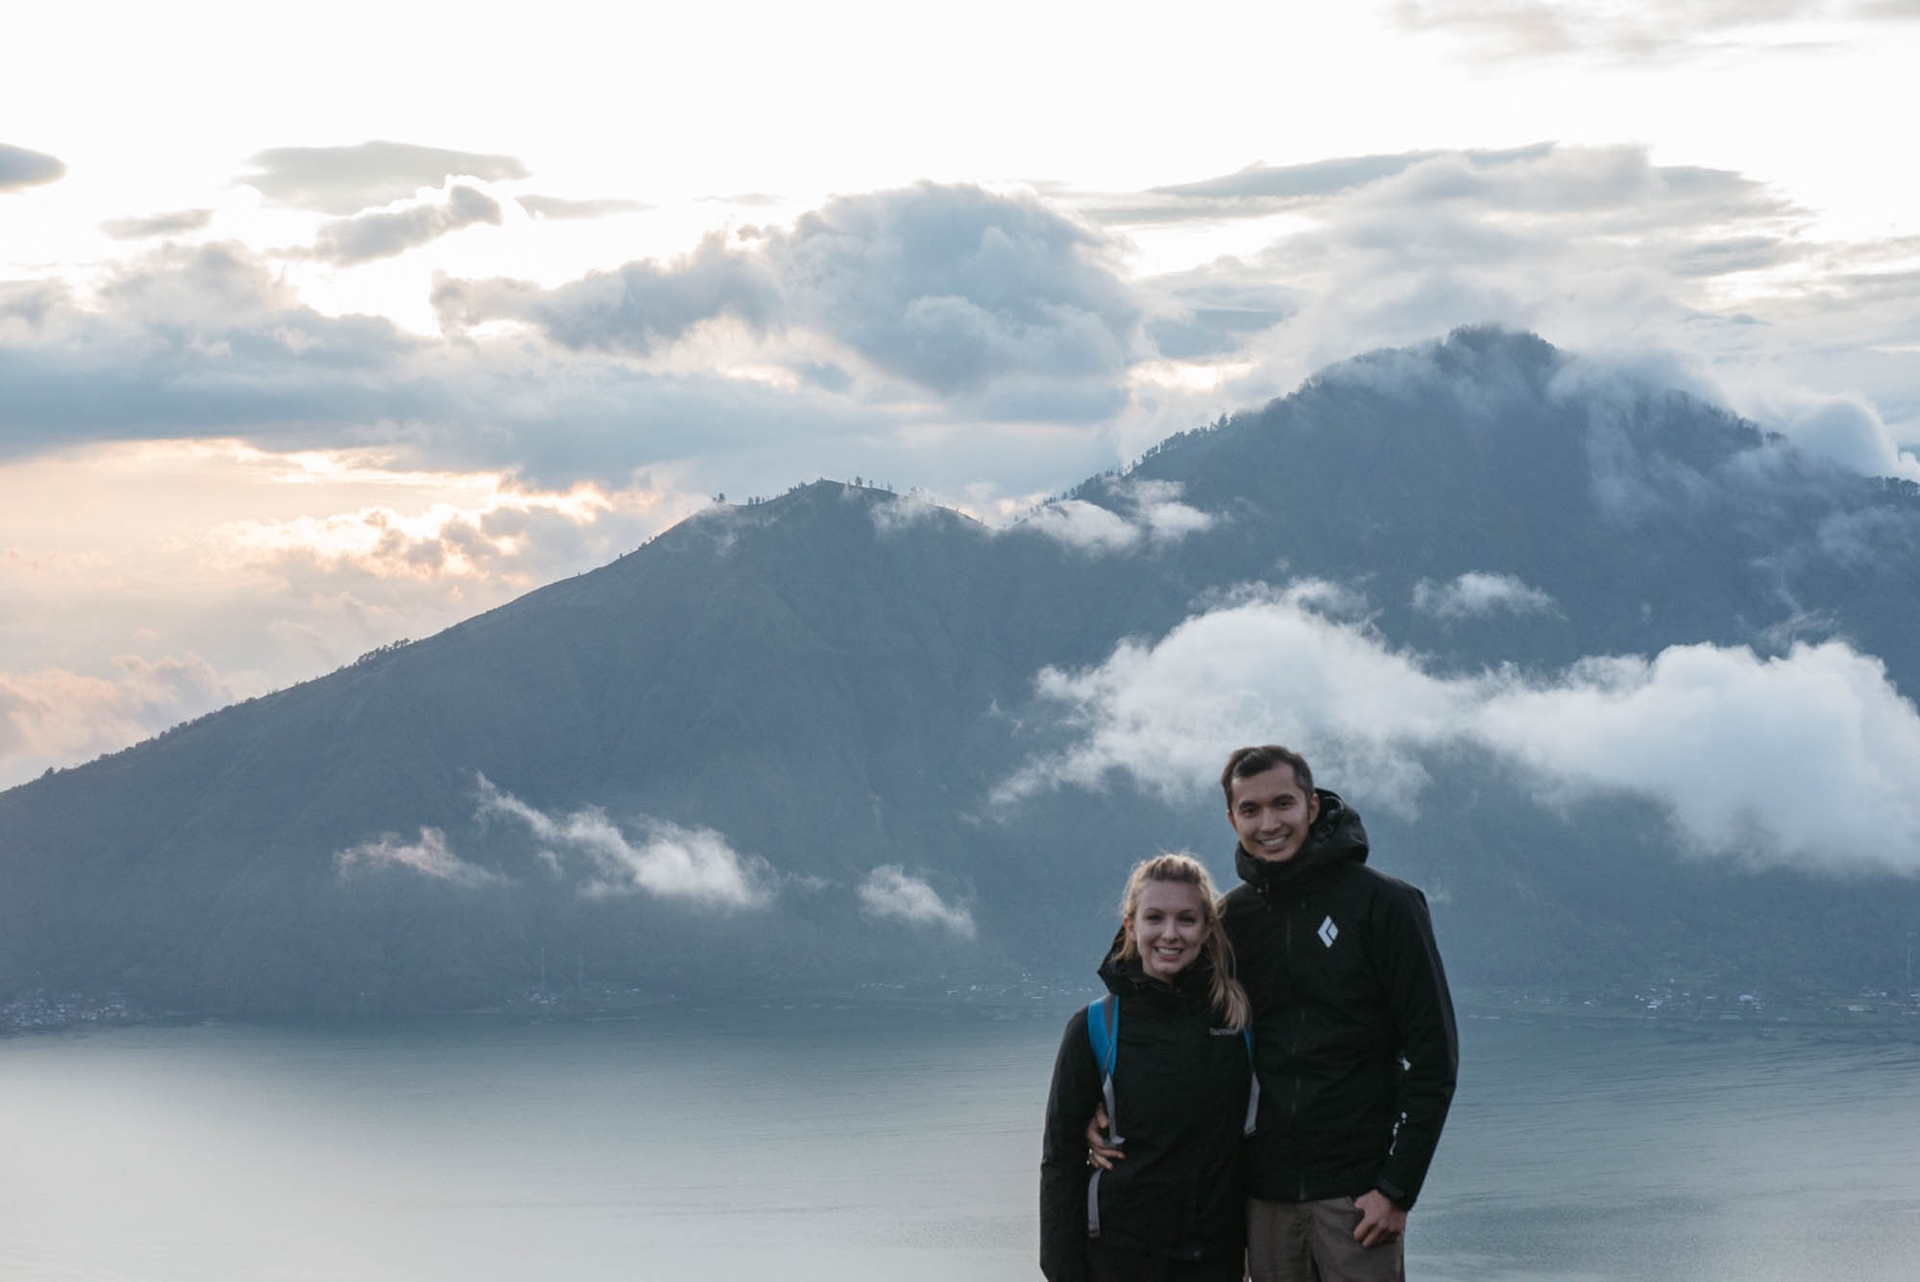 Jami and Frank at Mt Batur, Bali, Indonesia